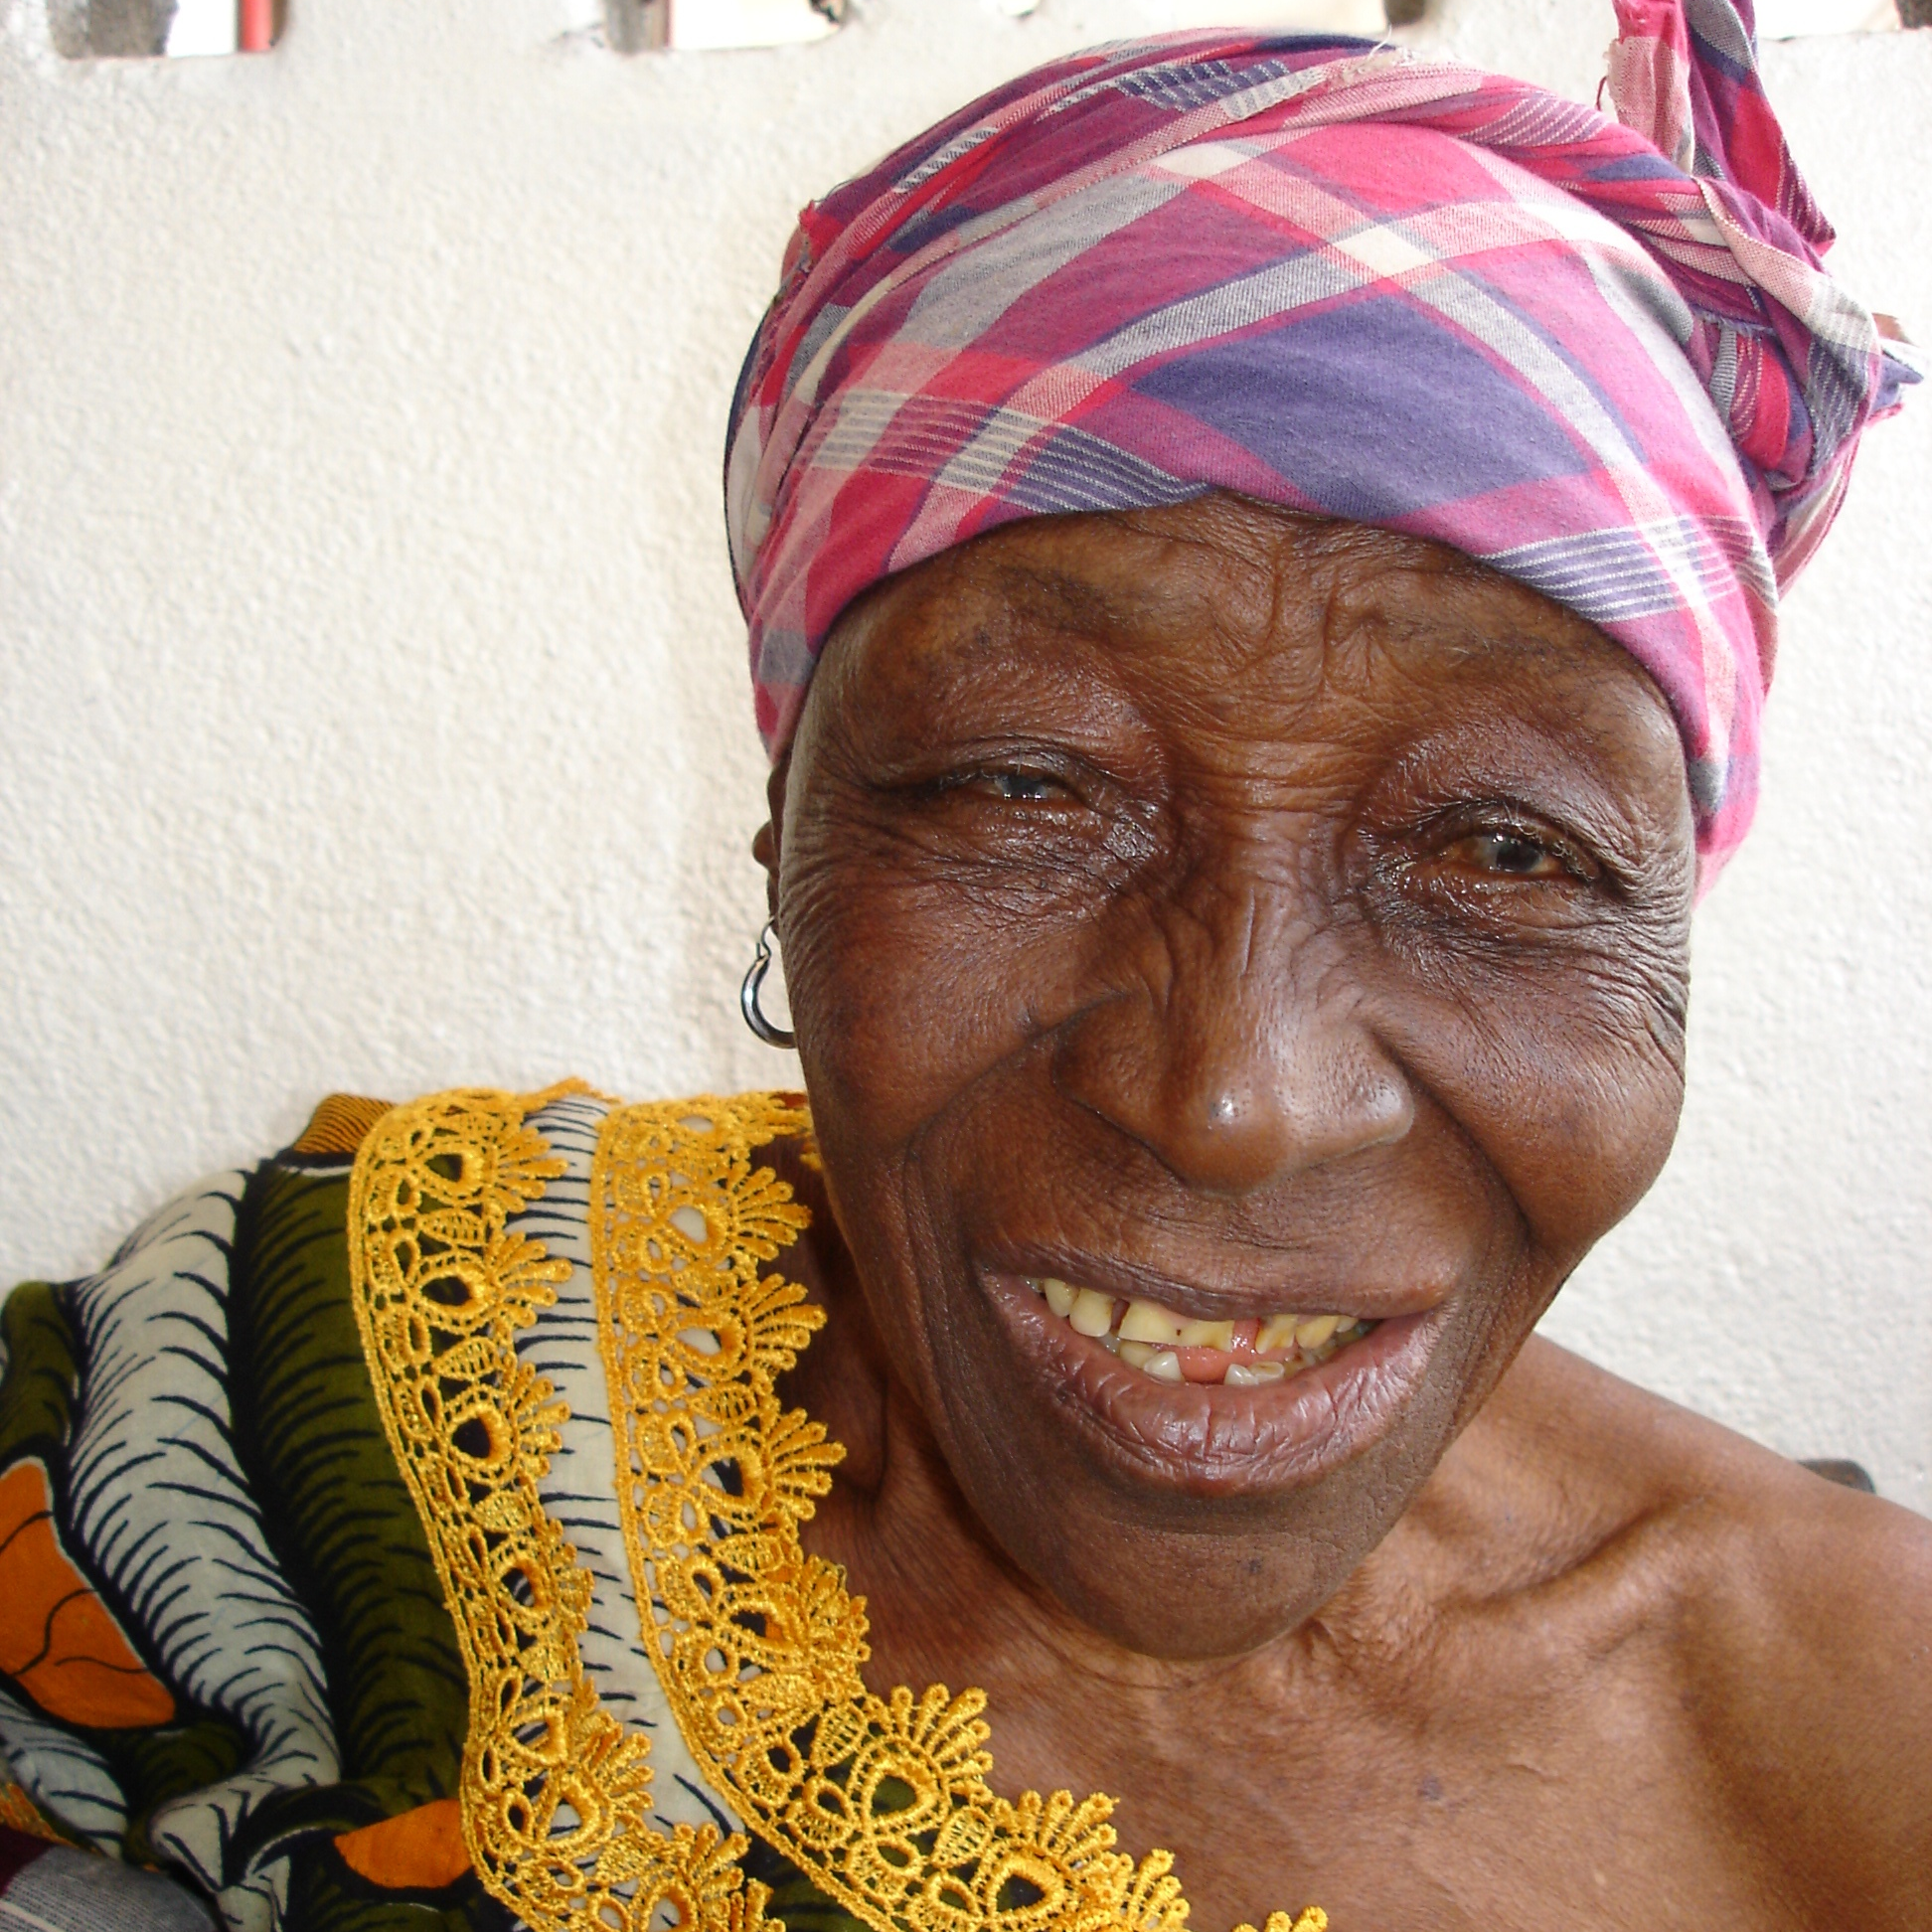 Village elderly woman